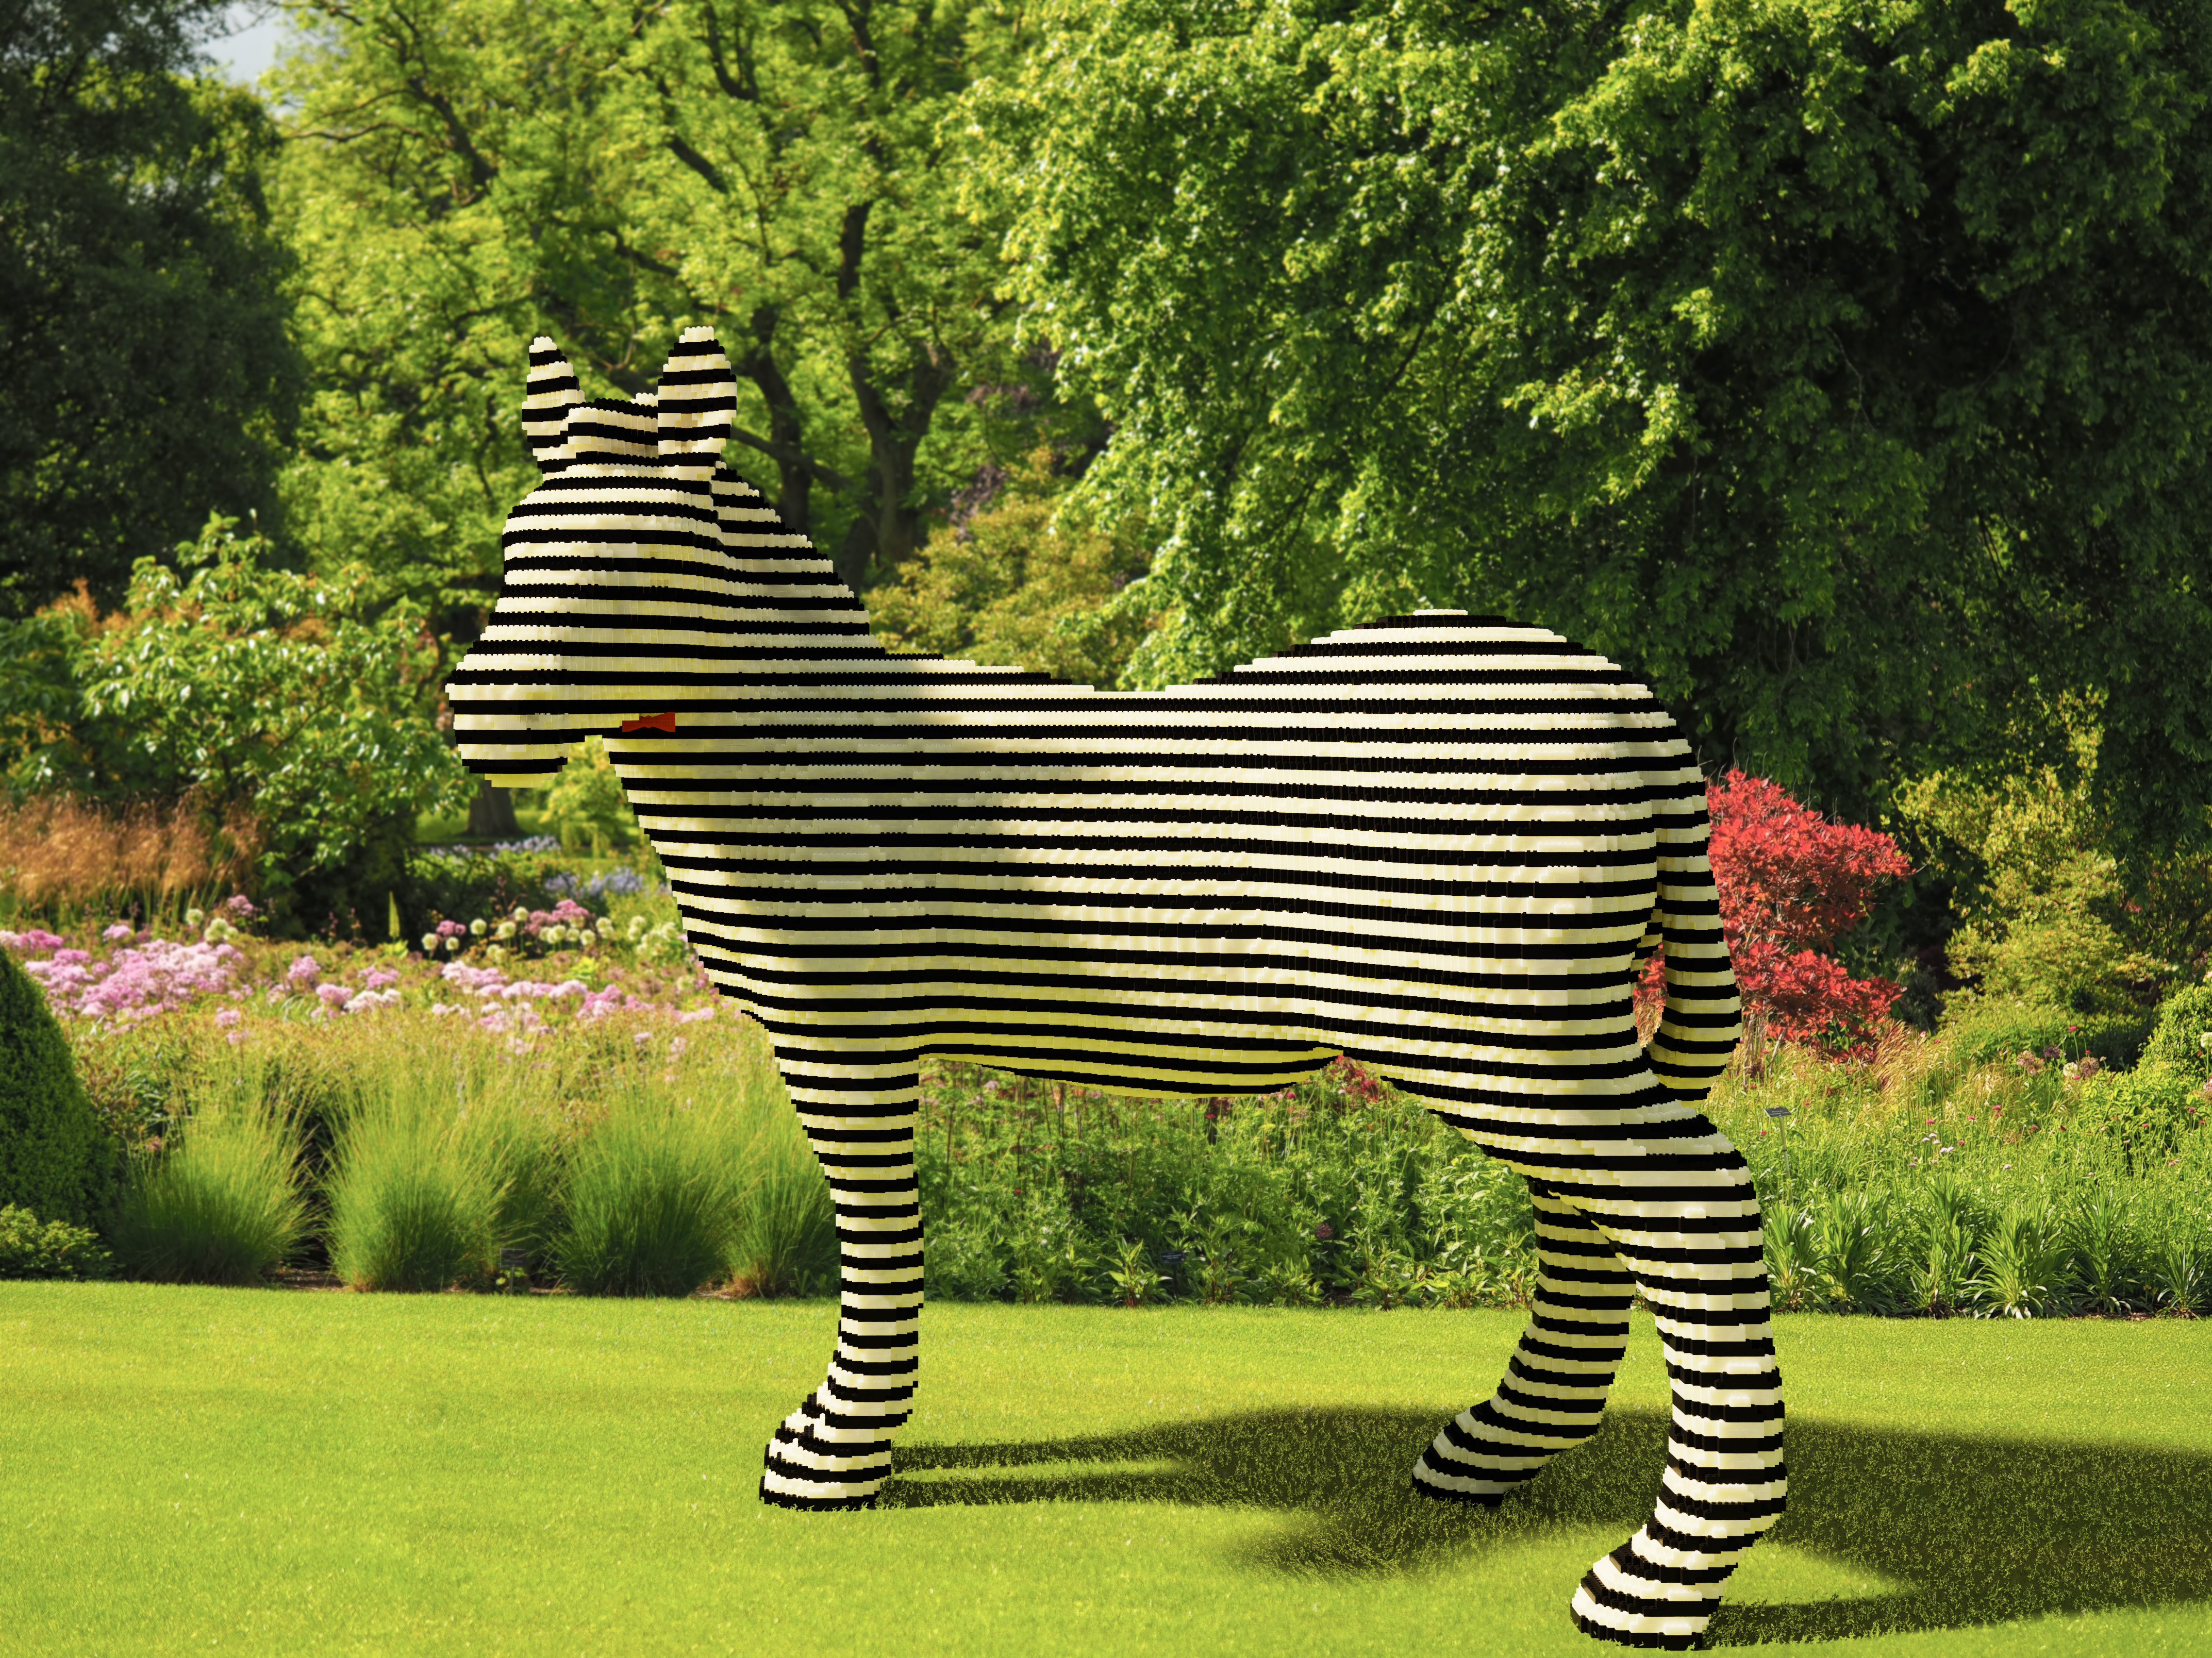 Art with LEGO bricks - Fancy Zebra